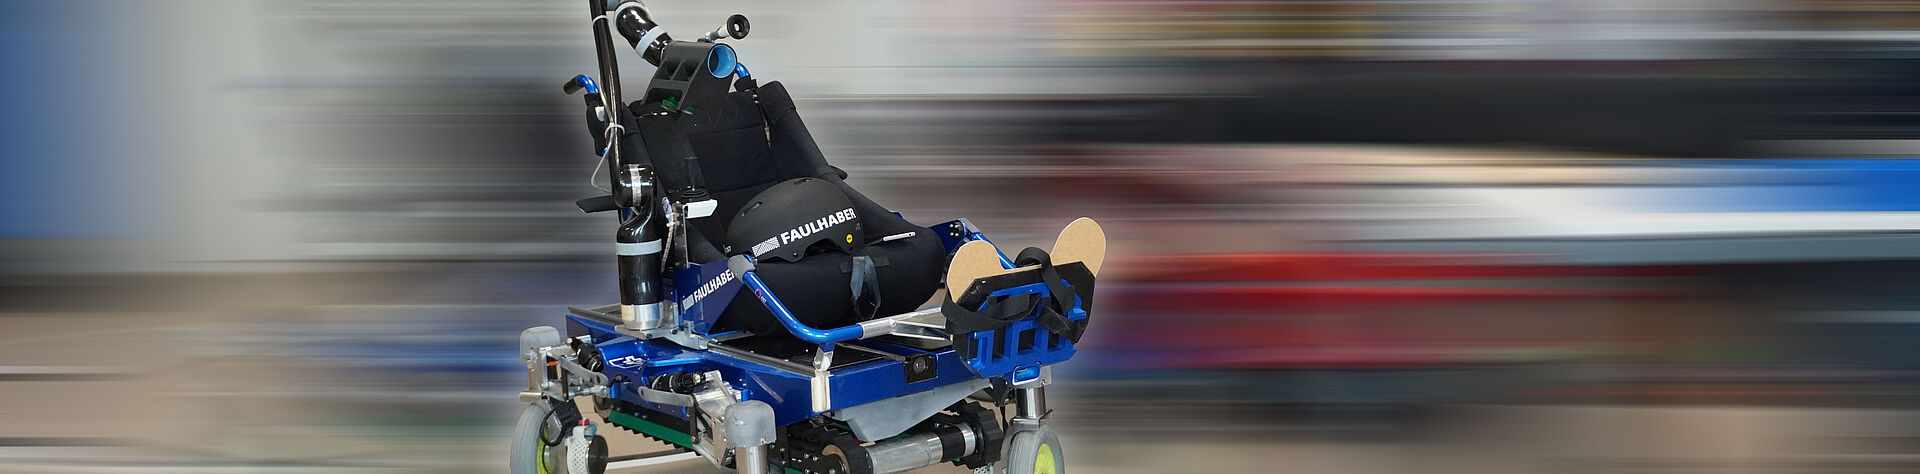 OST 拉珀斯维尔强化小组开发的轮椅 - 标题图片